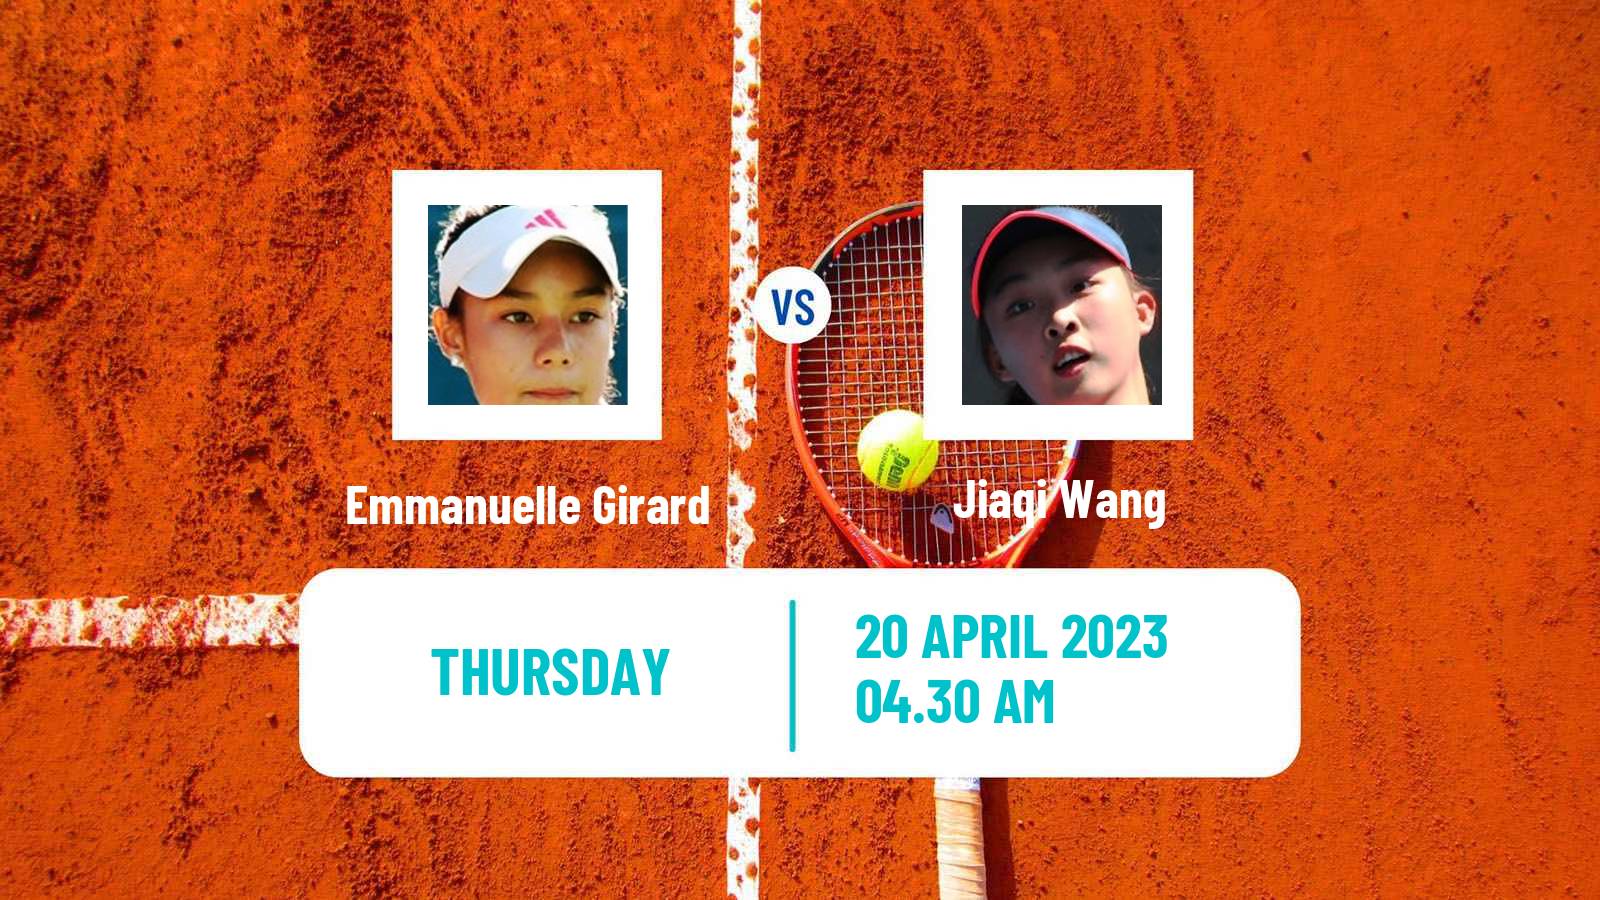 Tennis ITF Tournaments Emmanuelle Girard - Jiaqi Wang